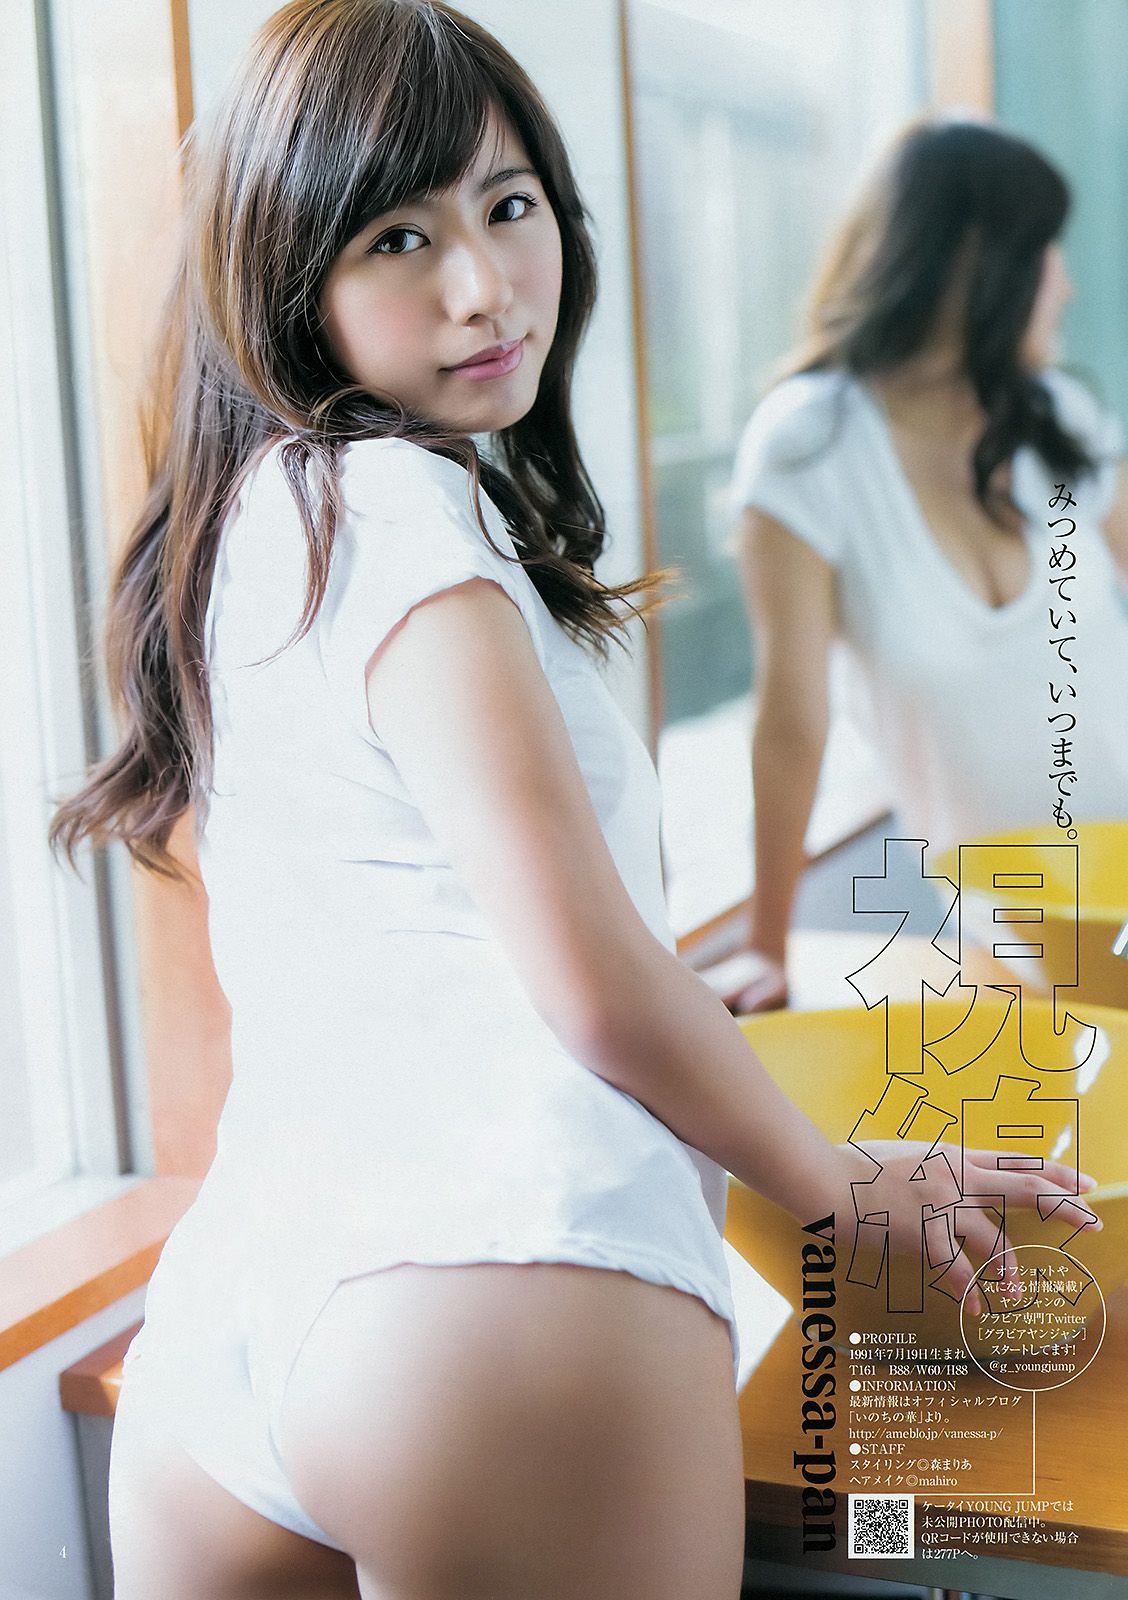 和田彩花 ヴァネッサ?パン [Weekly Young Jump] 2014年No.46 写真杂志/(11P)